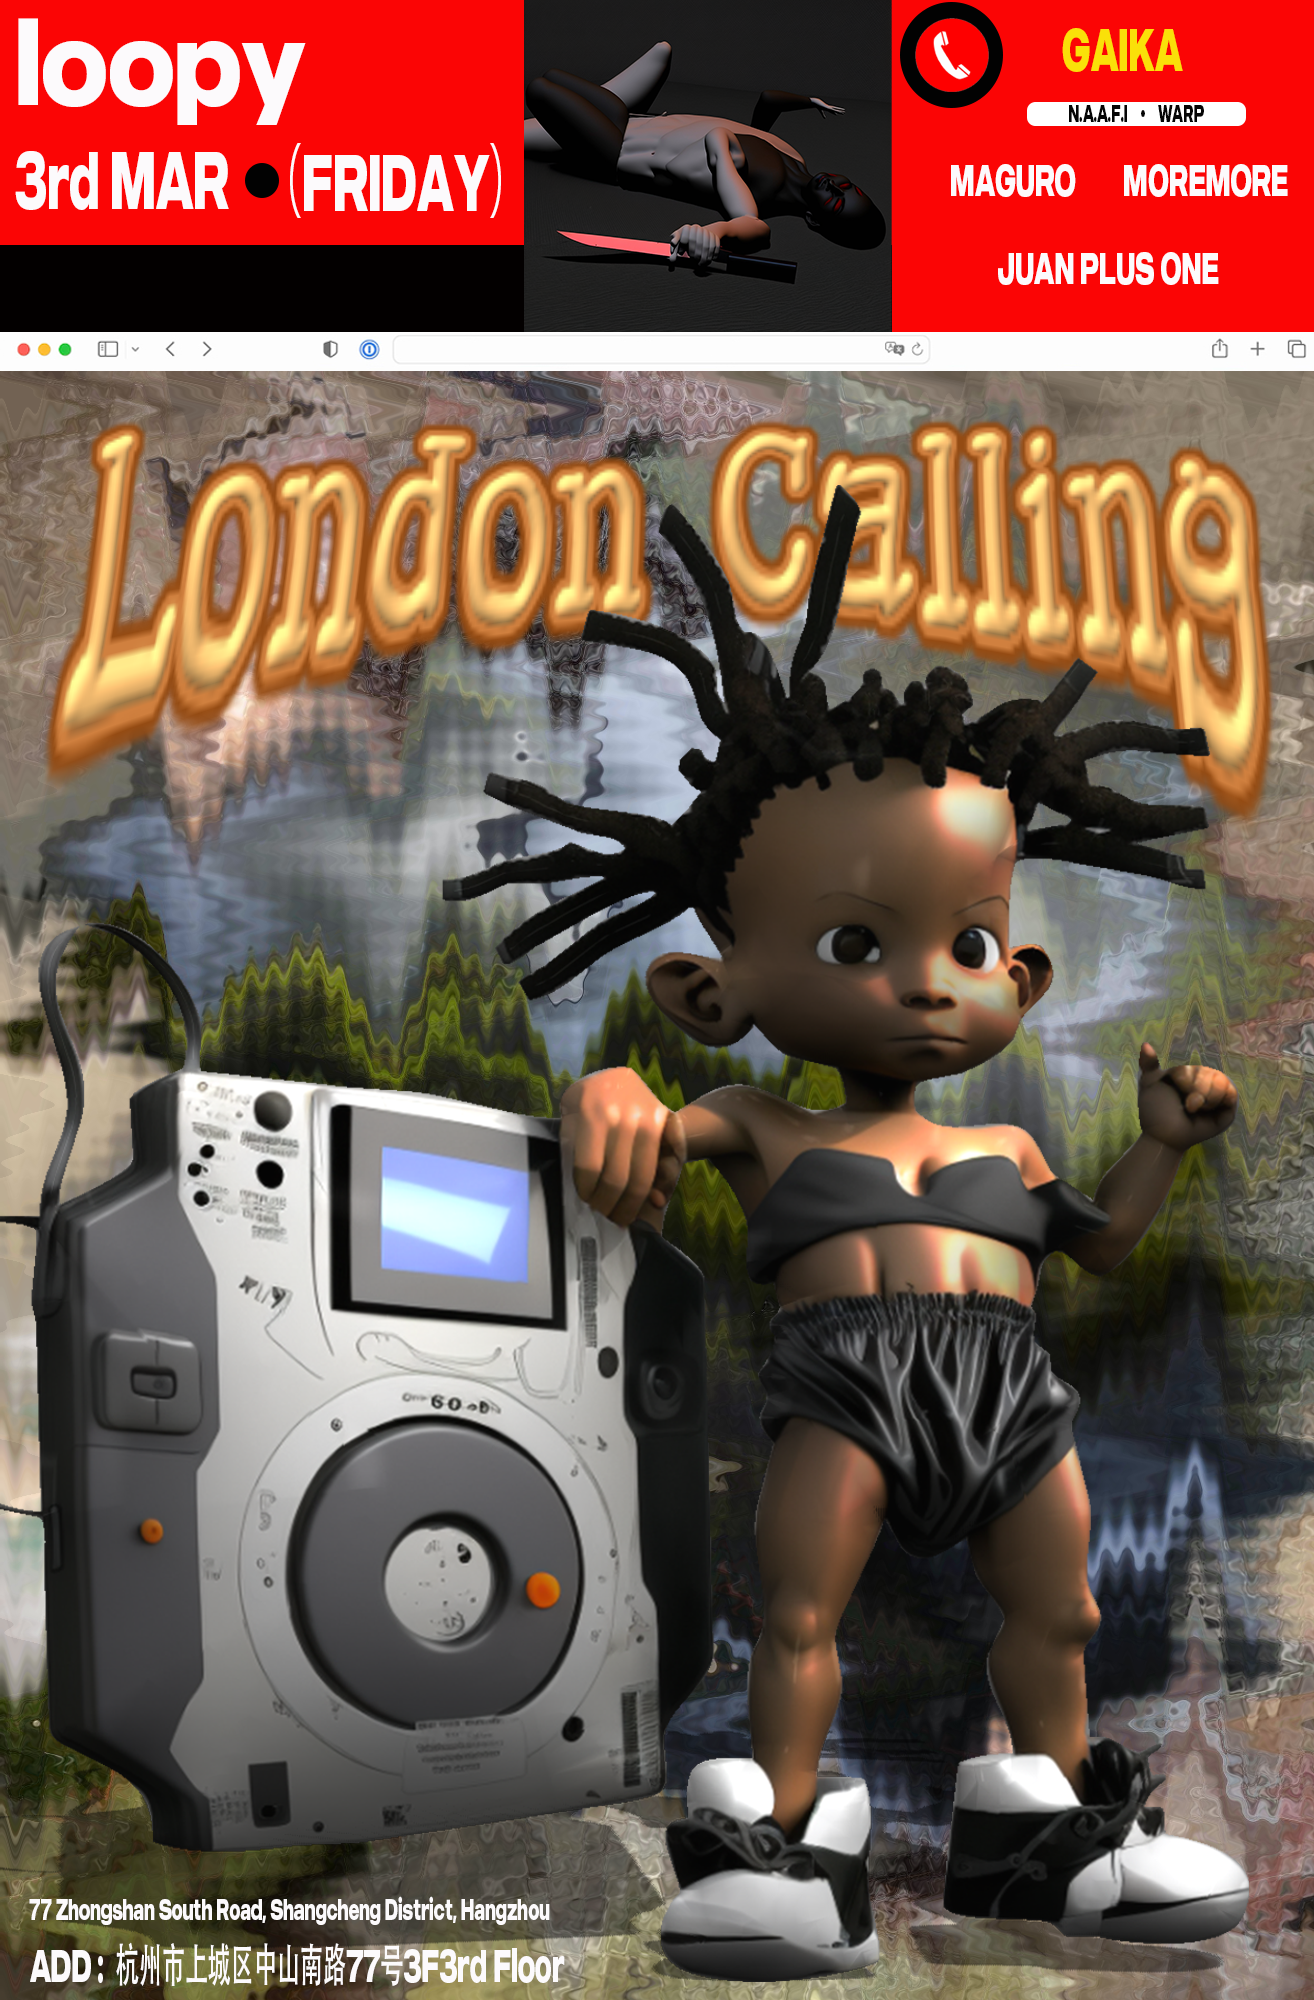 London Calling - 来自南伦敦的另一种说唱艺术 - フライヤー裏